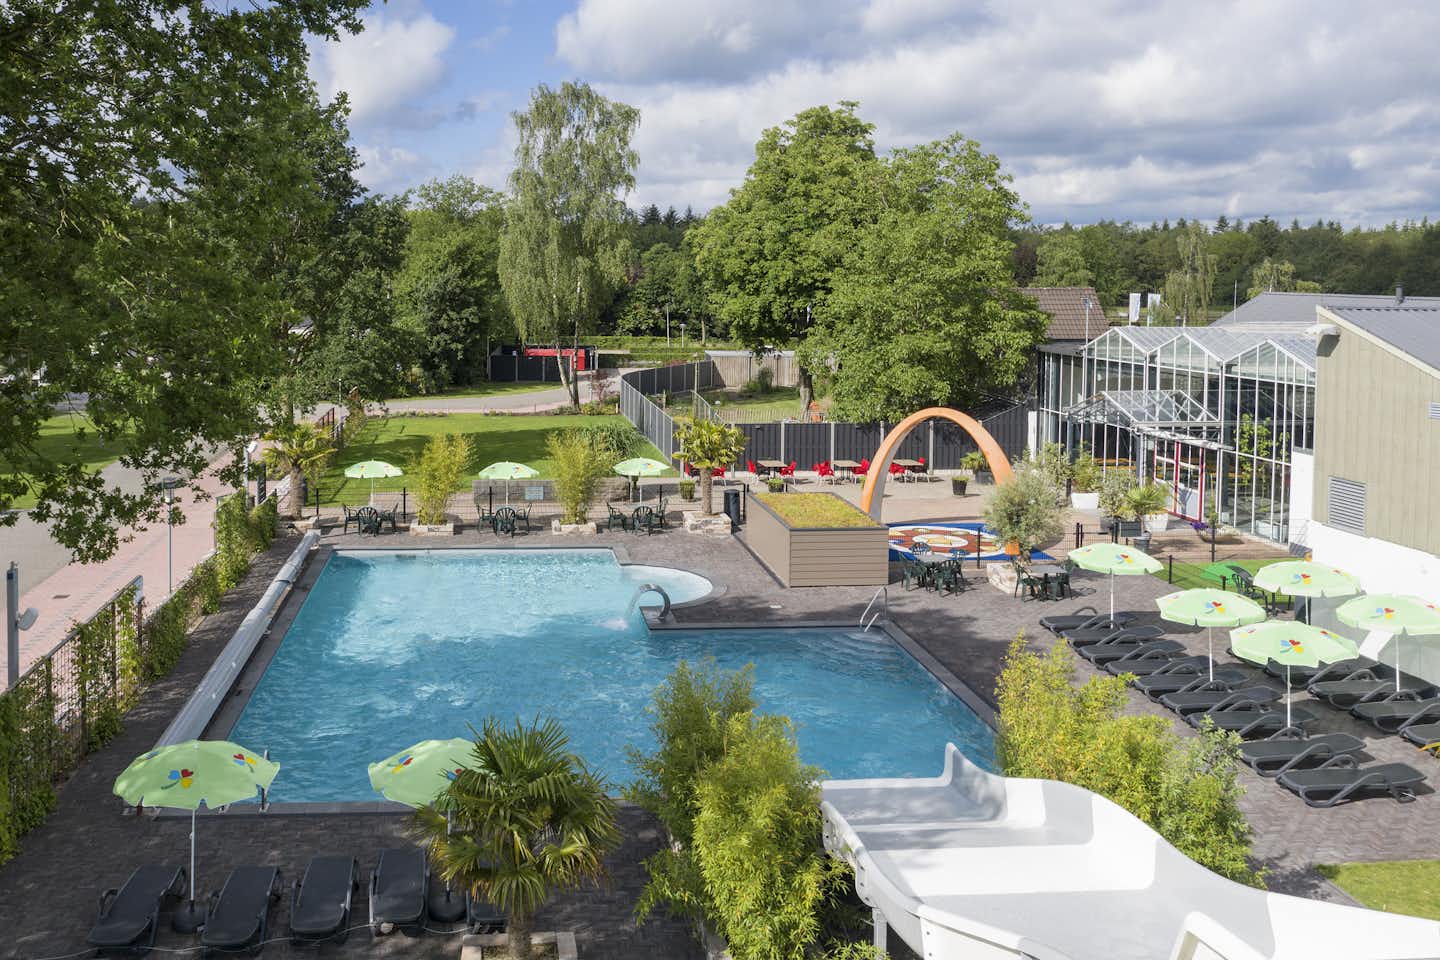 Vakantiepark 't Rheezerwold - Blick auf den Pool mit Wasserrutsche und Liegestühlen aus der Vogelperspektive